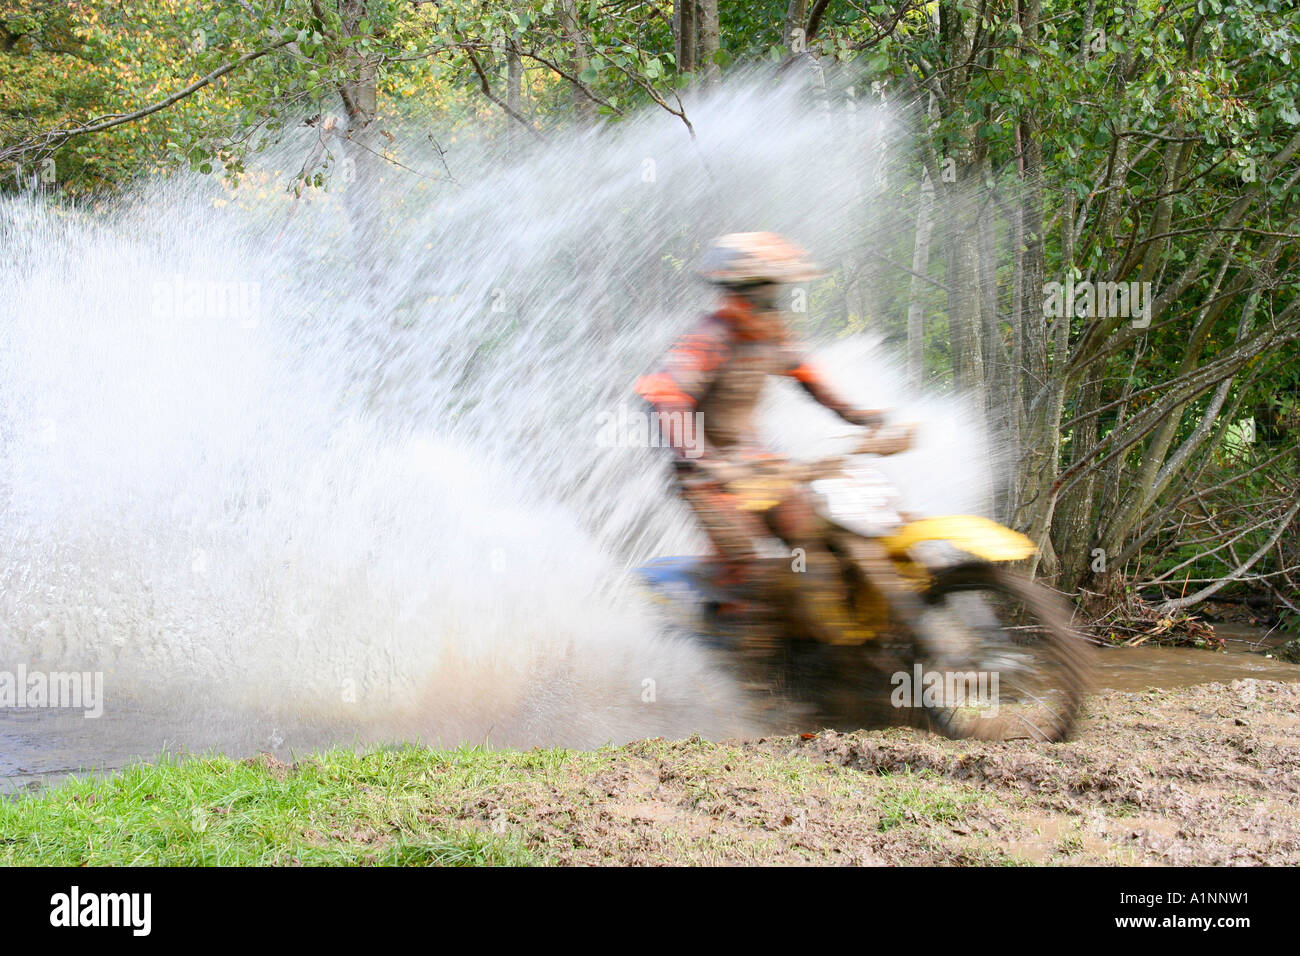 Enduro motocycliste dans de l'eau Splash Banque D'Images